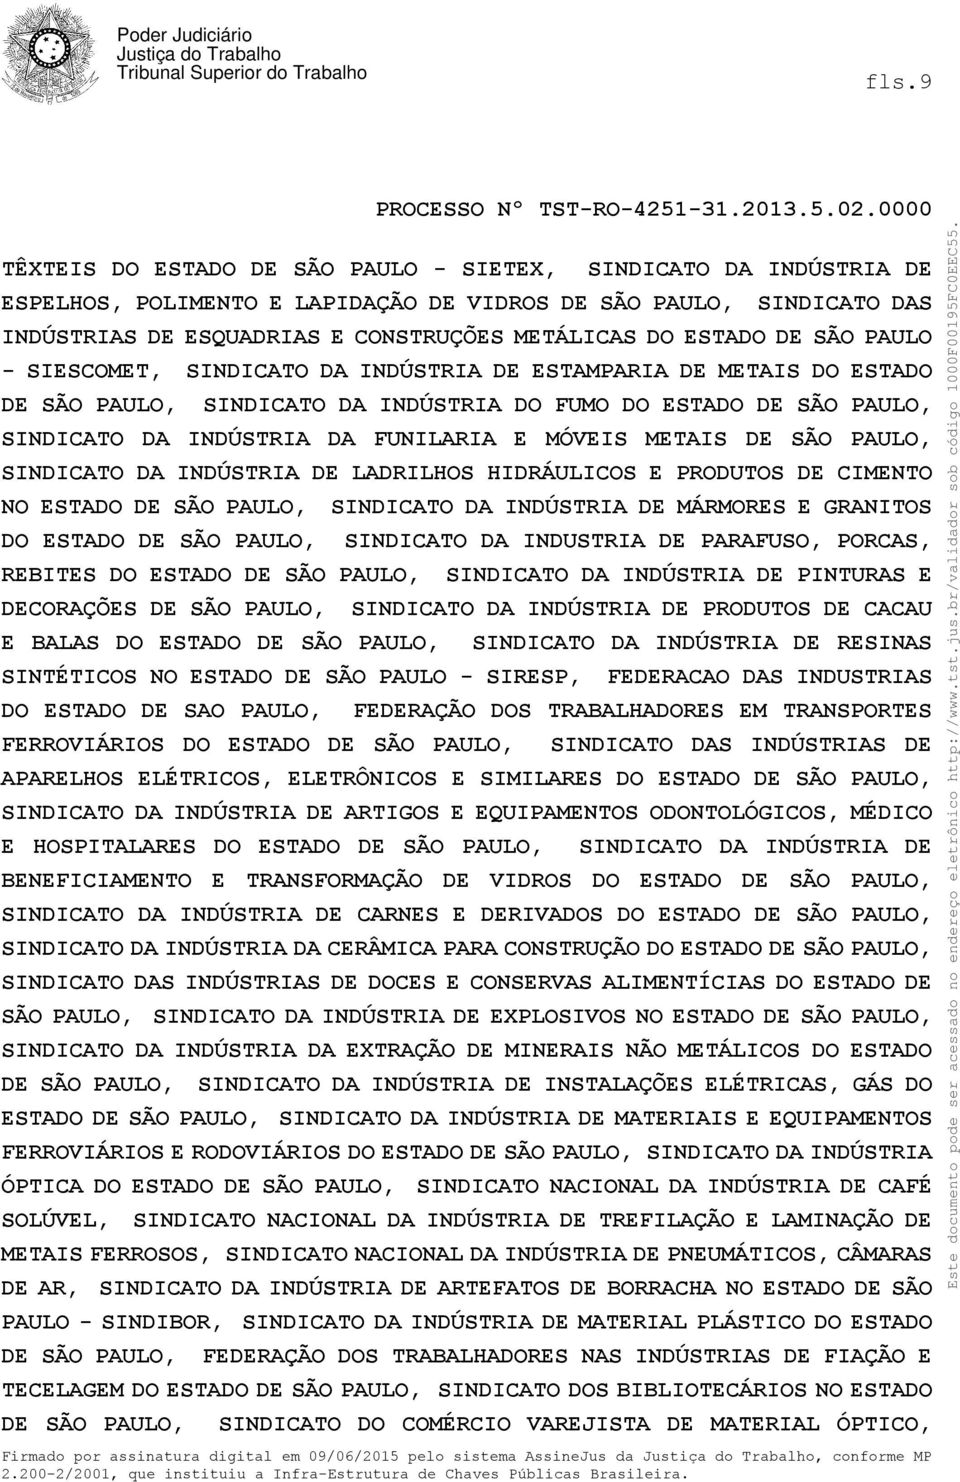 MÓVEIS METAIS DE SÃO PAULO, SINDICATO DA INDÚSTRIA DE LADRILHOS HIDRÁULICOS E PRODUTOS DE CIMENTO NO ESTADO DE SÃO PAULO, SINDICATO DA INDÚSTRIA DE MÁRMORES E GRANITOS DO ESTADO DE SÃO PAULO,